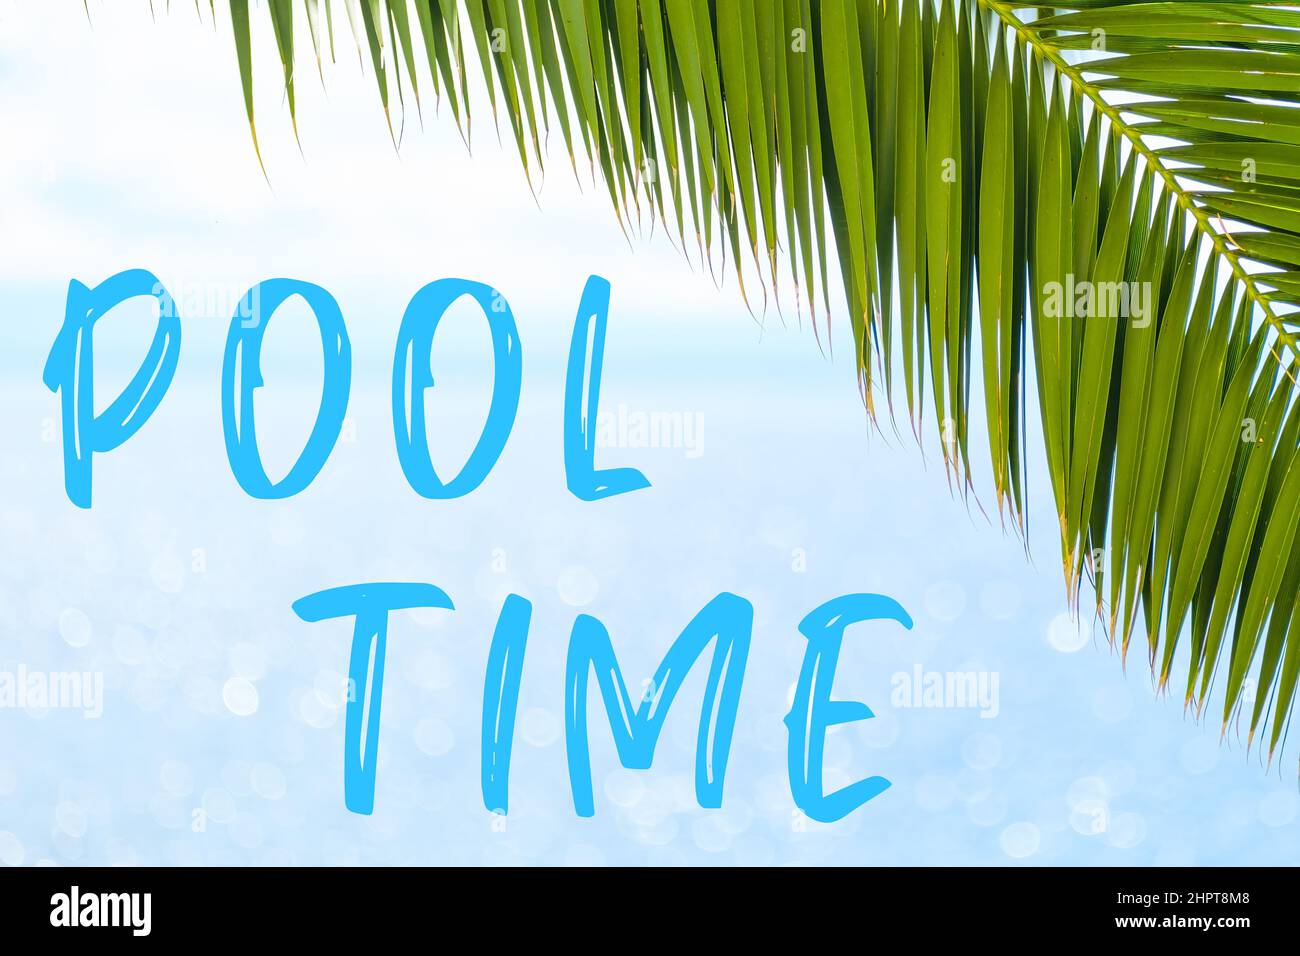 Nachricht zur Poolzeit in eleganter Schrift auf dem Hintergrund mit Palmenblatt und blauem Meer. Urlaubskonzept und Werbung der Reiseagentur. Stockfoto